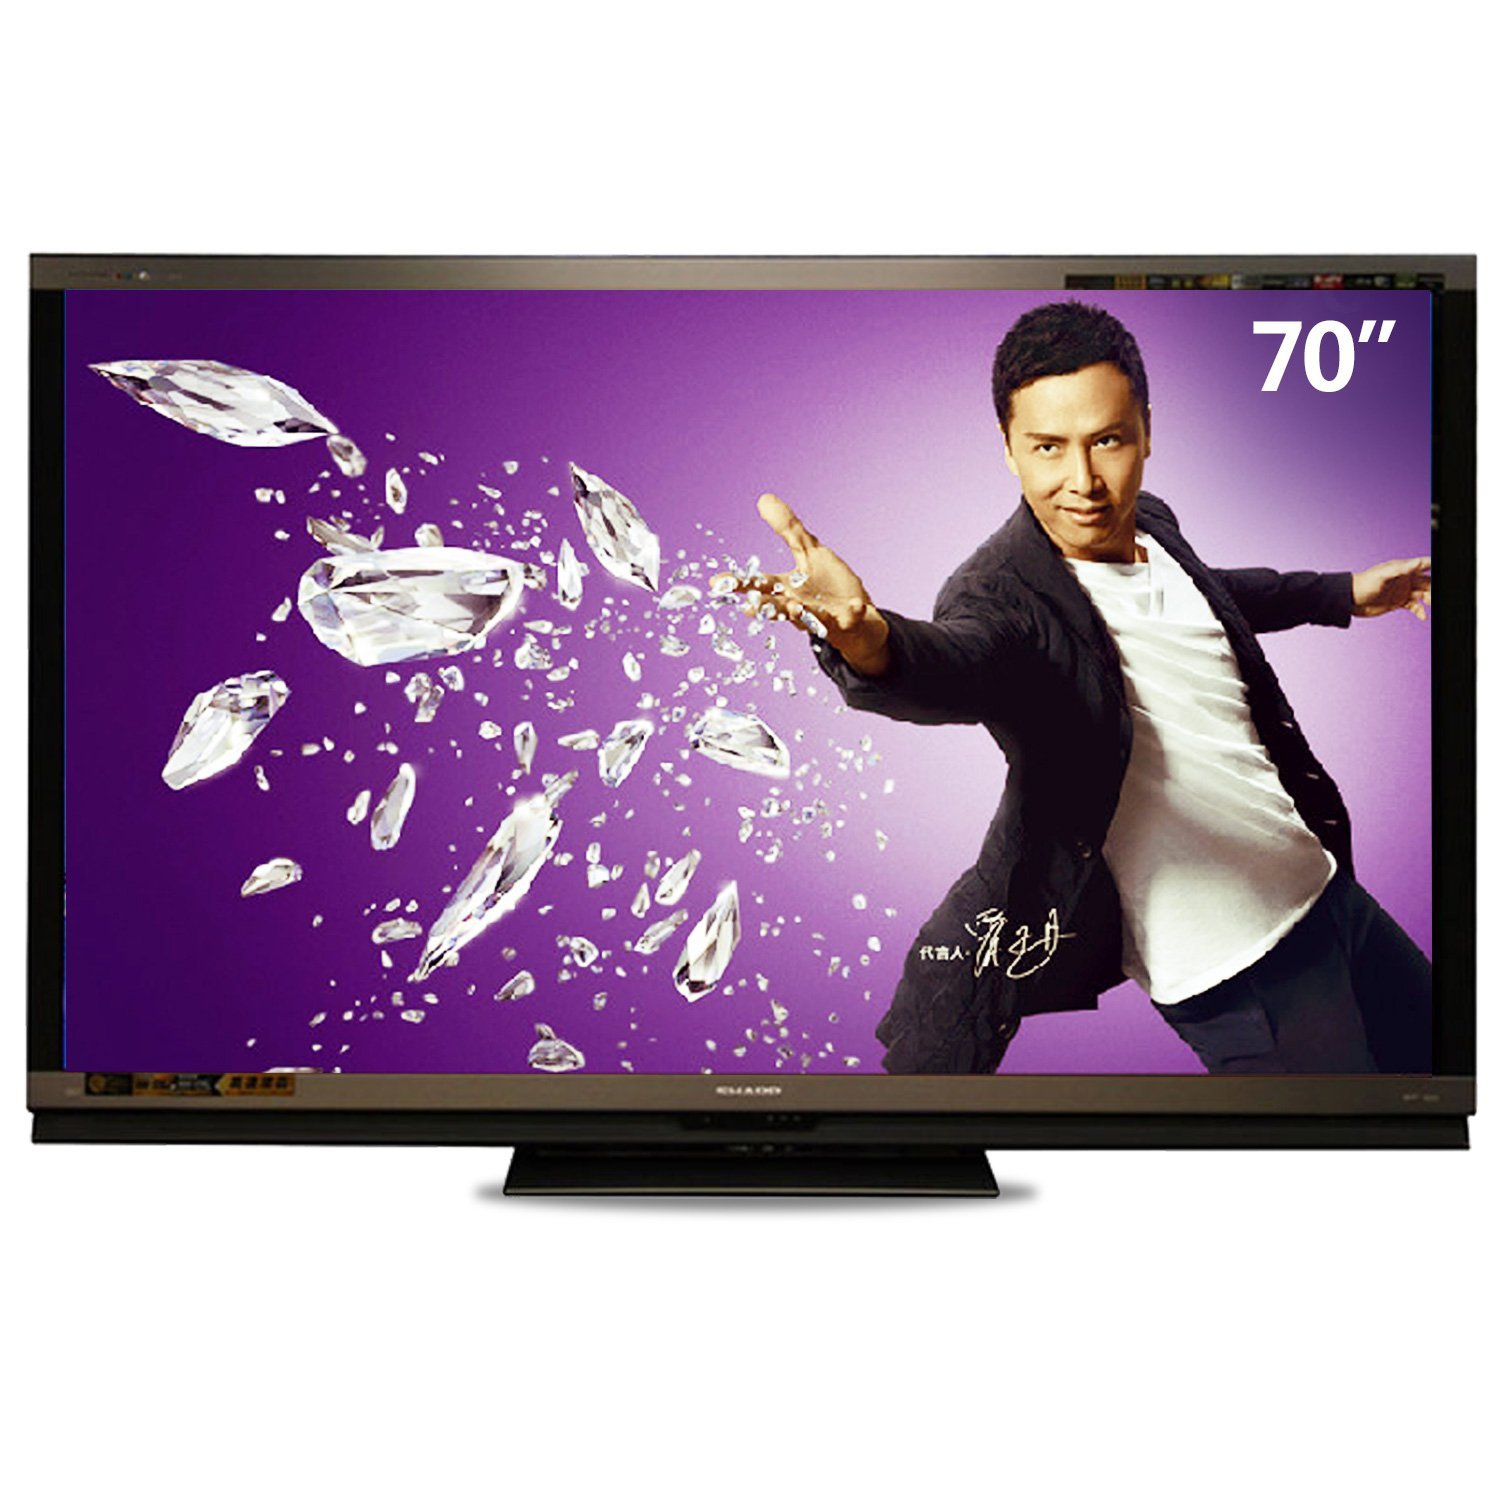 夏普液晶电视LCD-65RX1产品价格_图片_报价_新浪家居网